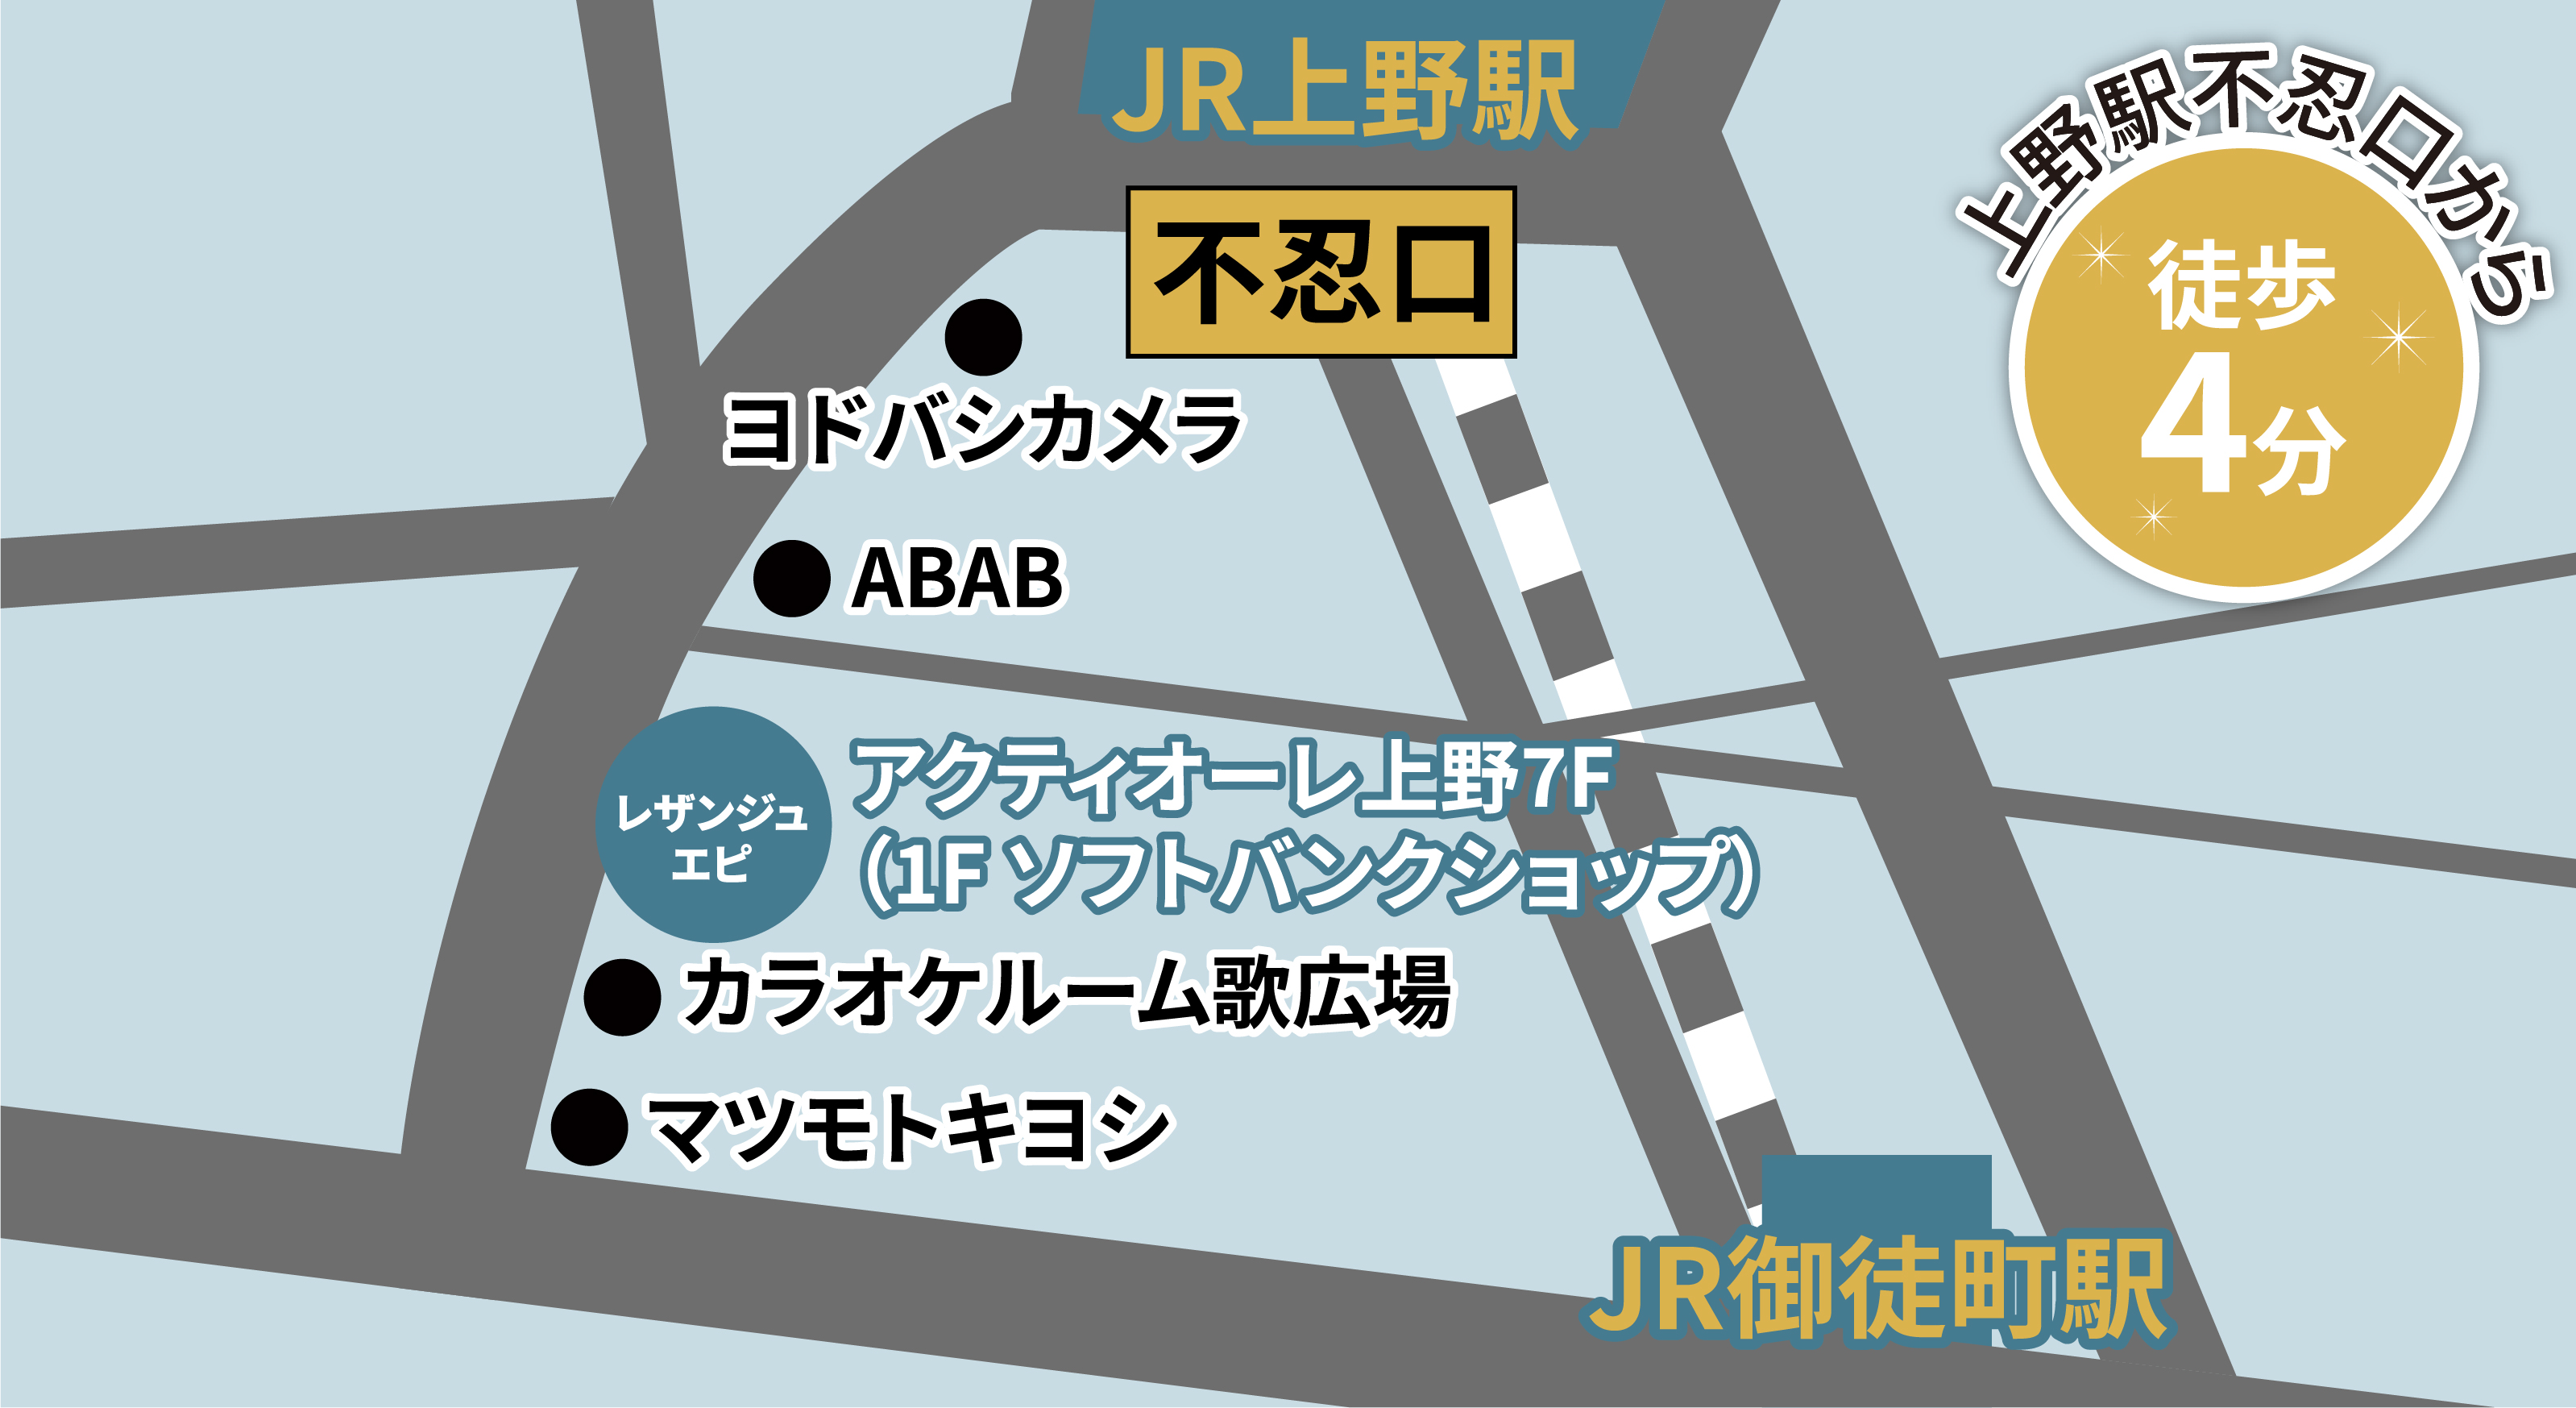 上野駅不忍口から徒歩4分 アクティオーレ上野7F